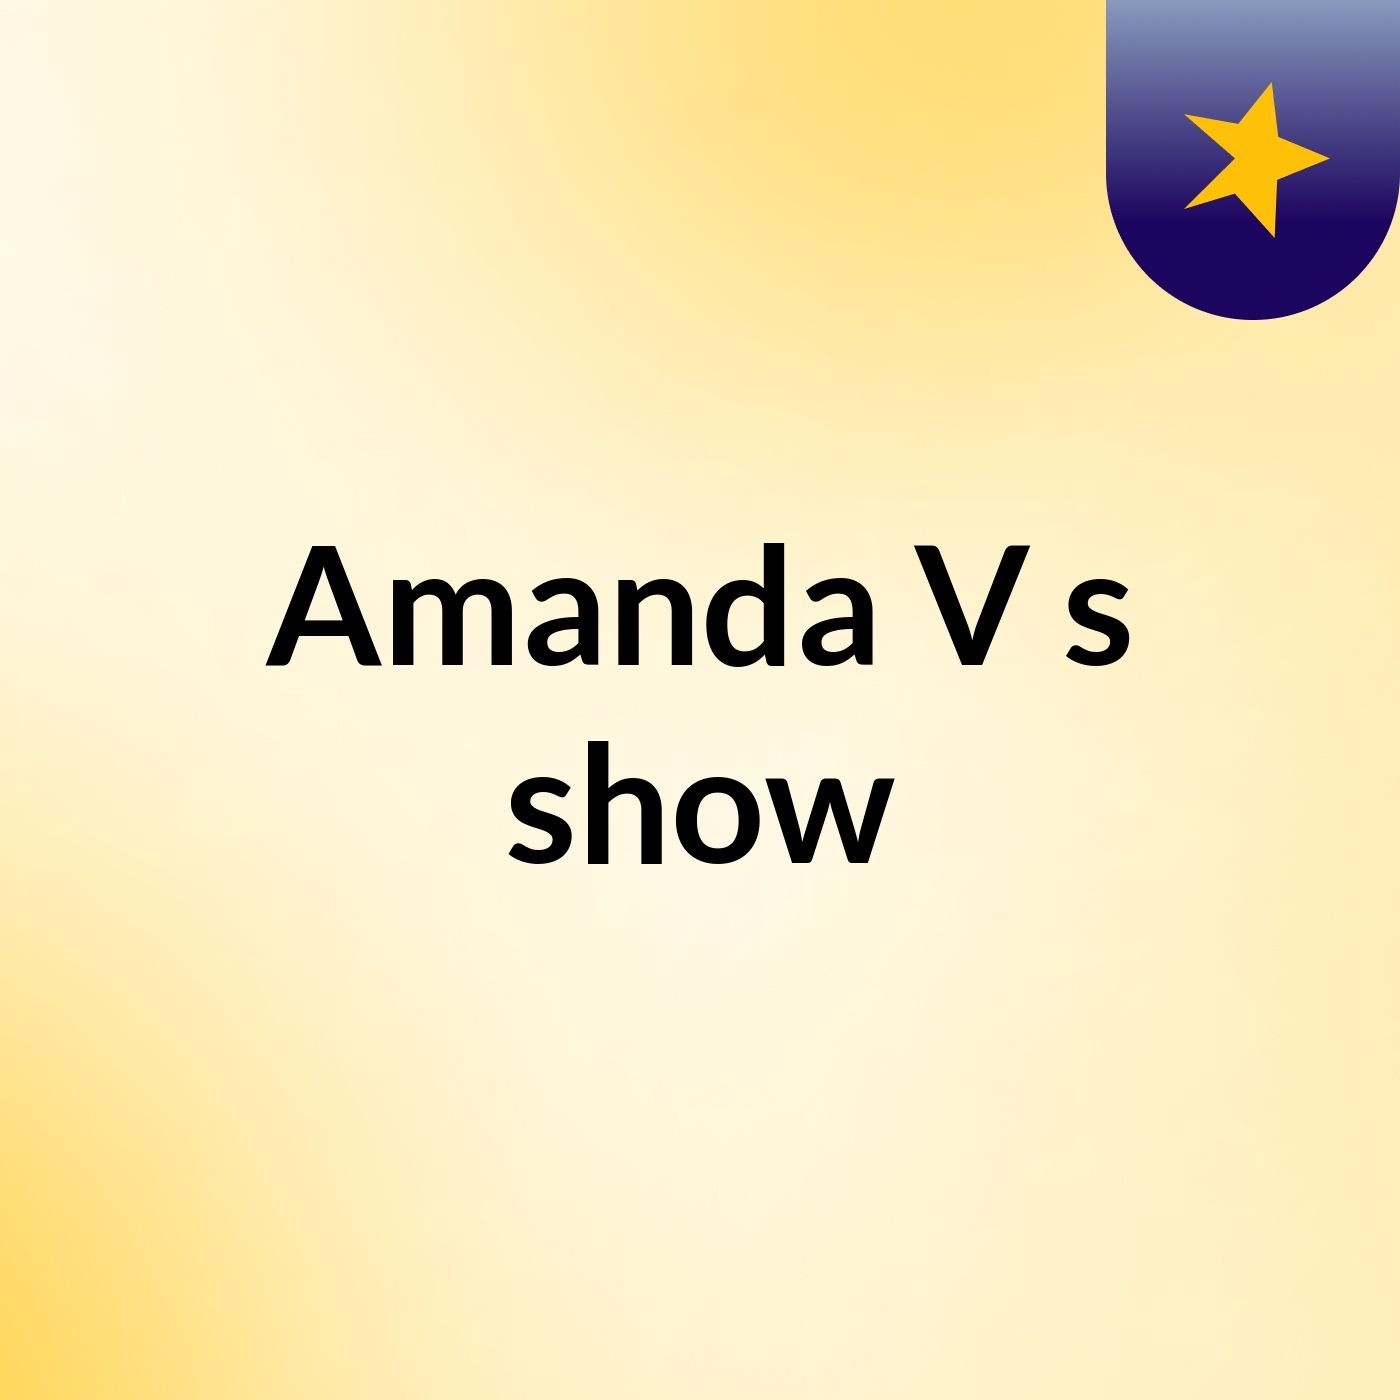 Amanda V's show